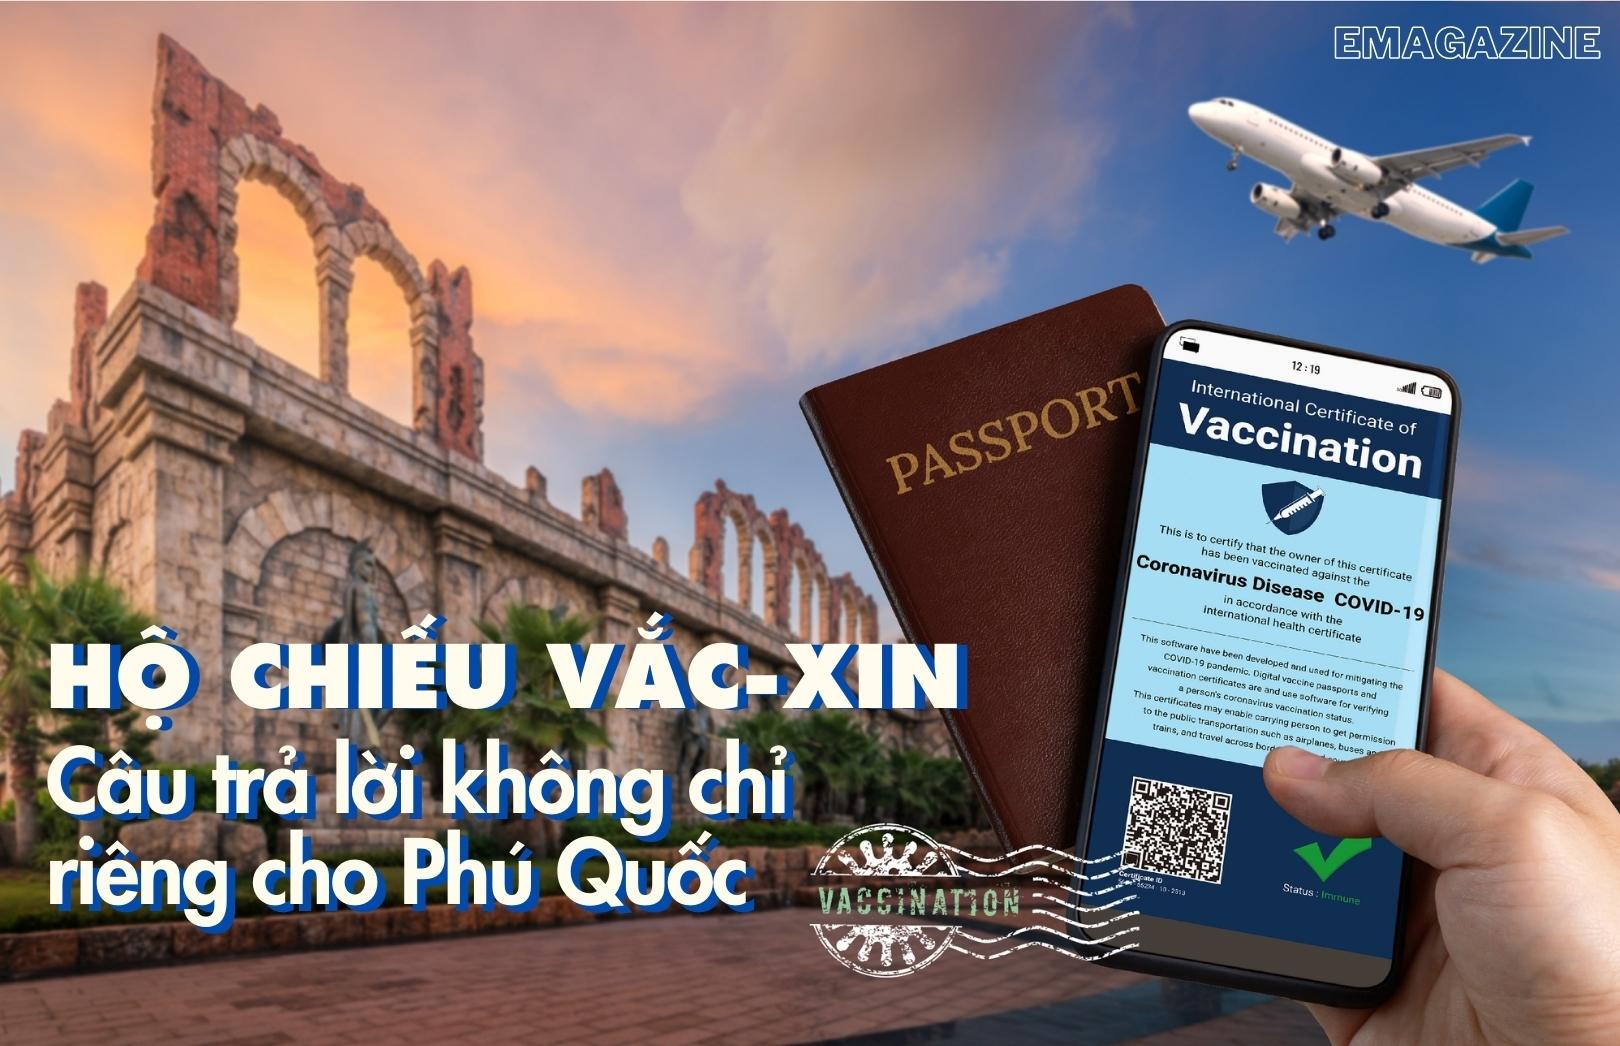 Hộ chiếu vắc-xin - câu trả lời không chỉ riêng cho Phú Quốc